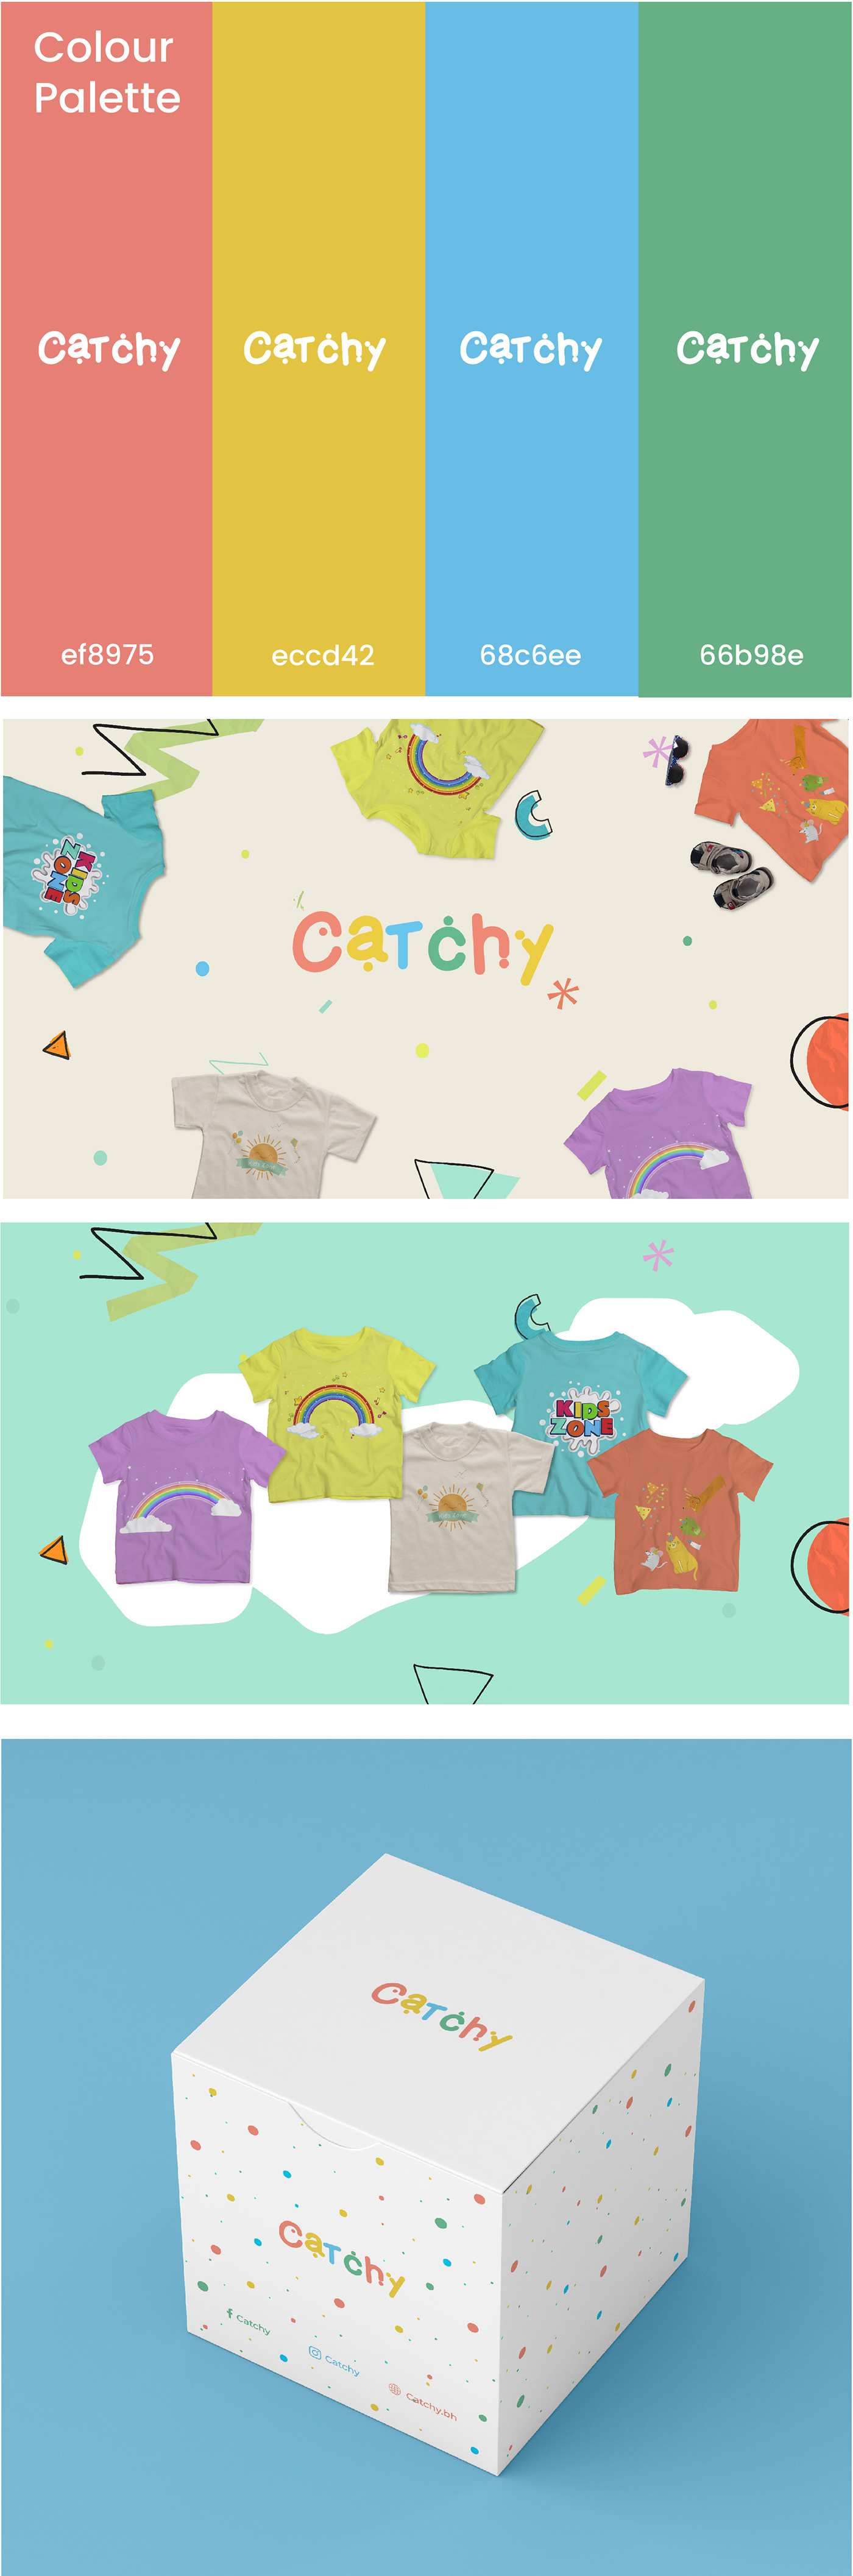 BABYFASHION babywear boysFashion branddesign branddesigner design Fashion  kidsdesign Kidsfashion kidswear